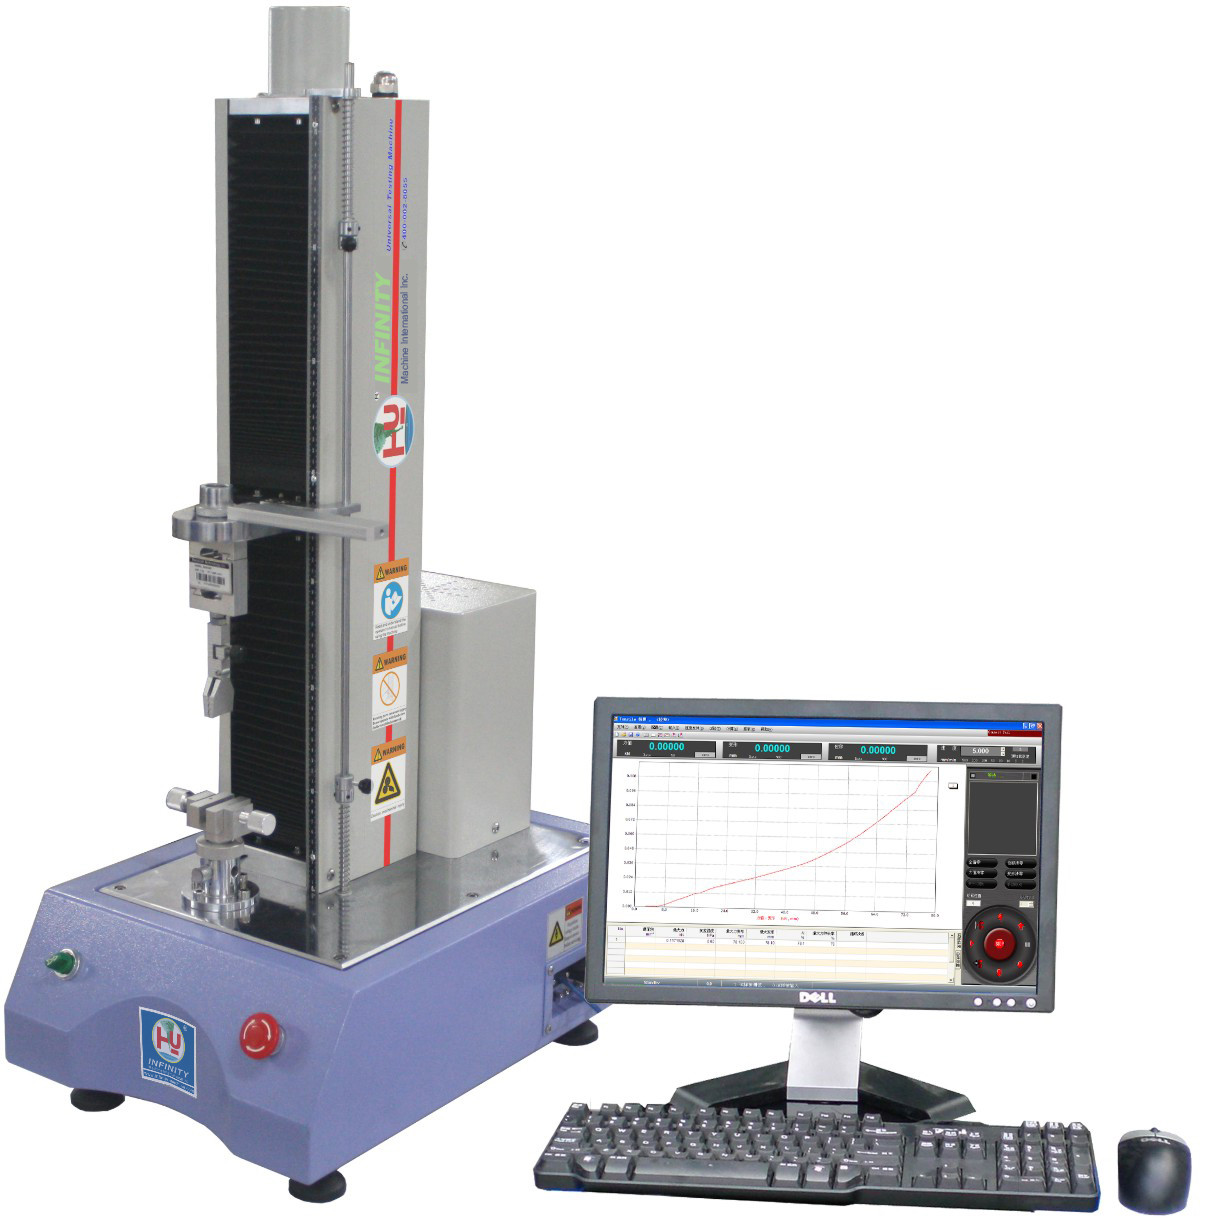 굽기 테스트를 위한 전자적 튼력 테스트 기계 &amp; 유니버설 테스트를 이용한 컴퓨터 제어 튼력 테스트